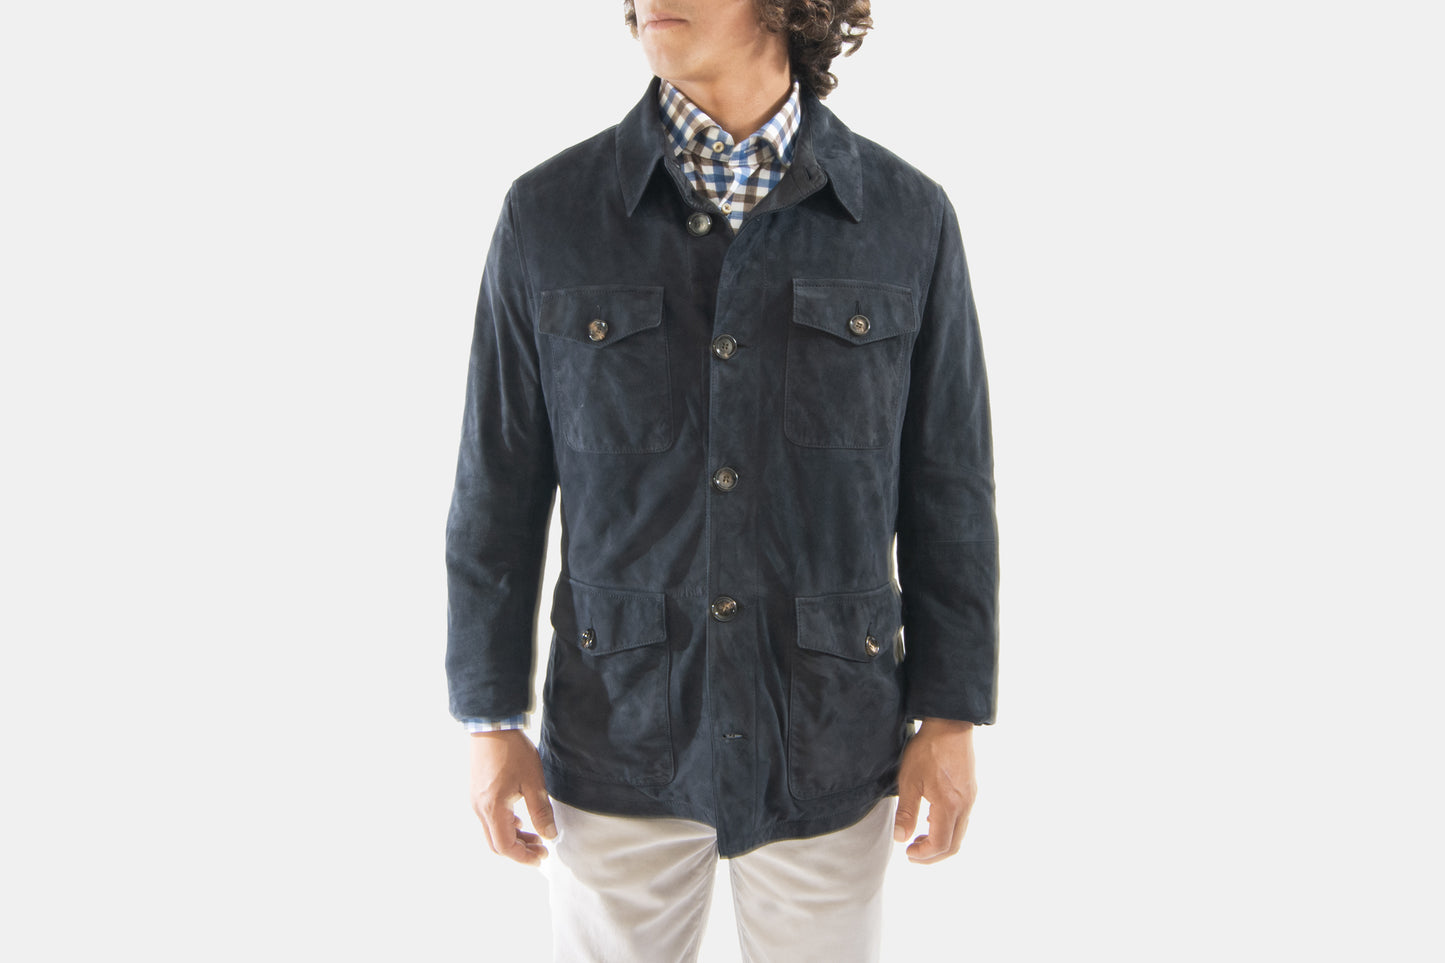 khakis of Carmel - navy suede jacket